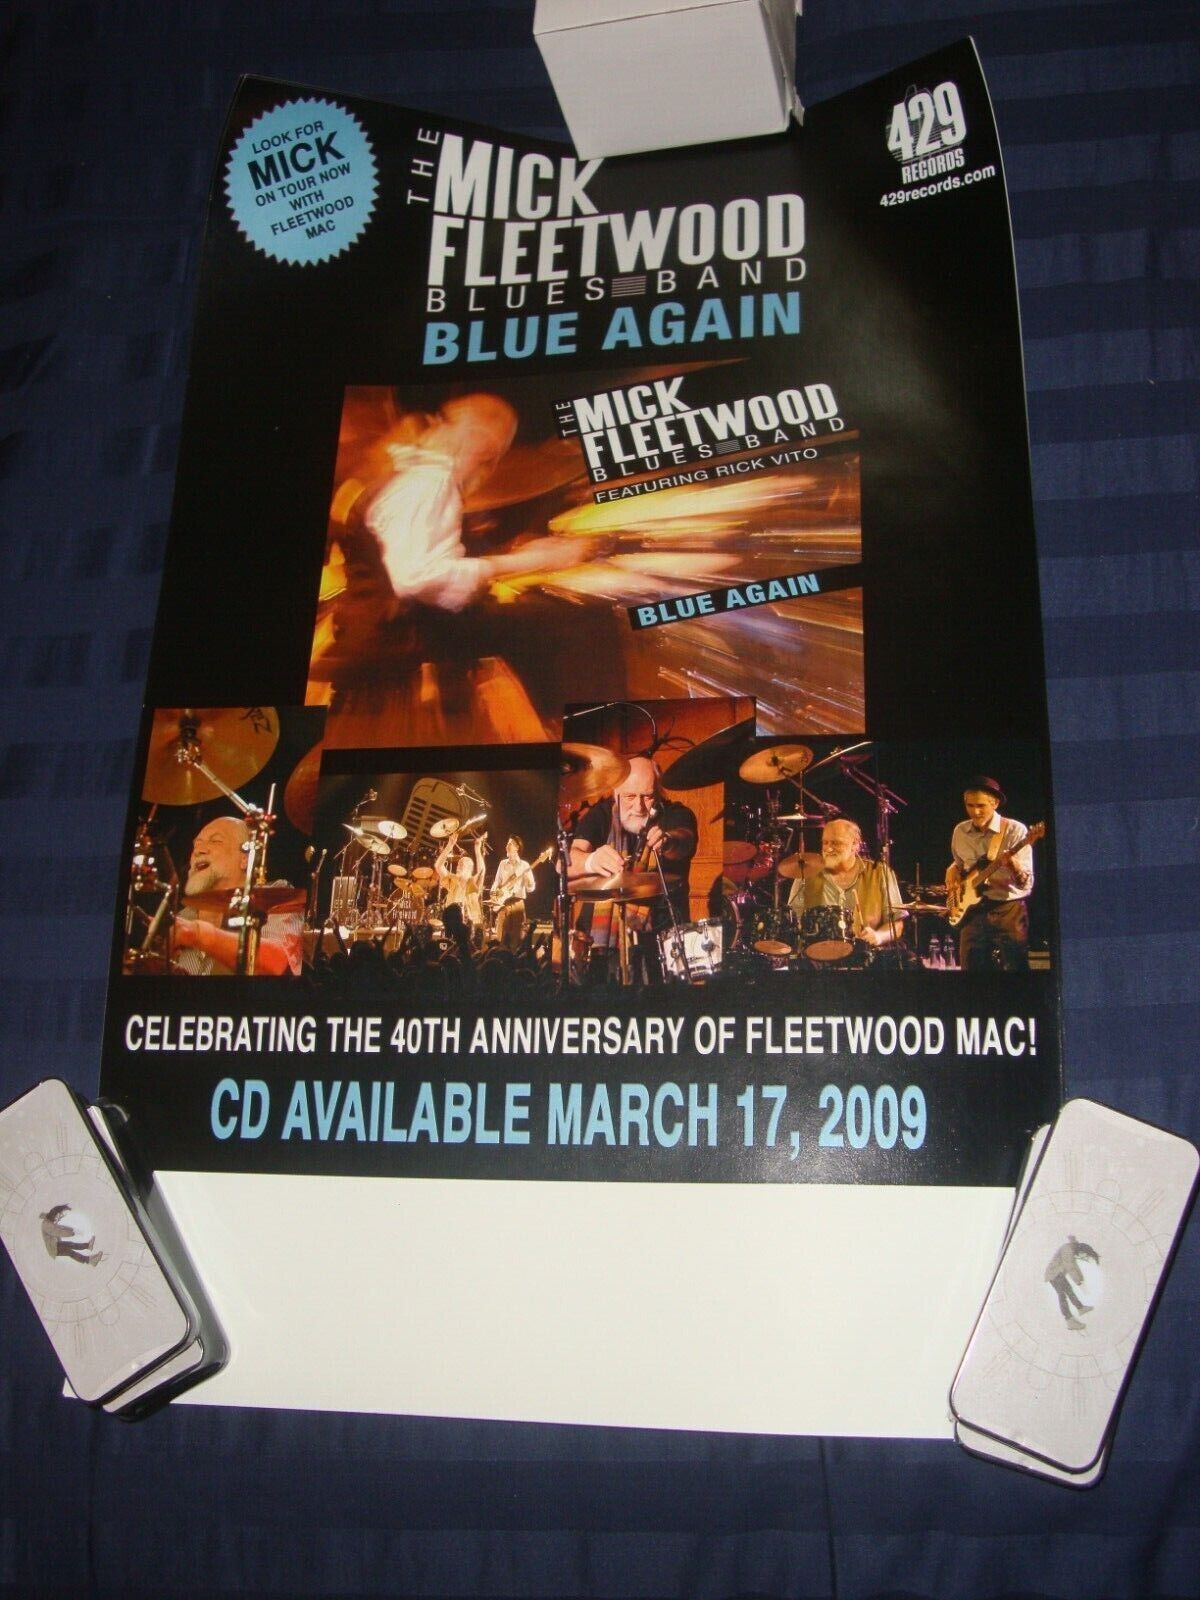 Fleetwood Mac Mick Fleetwood Blue Again promo poster